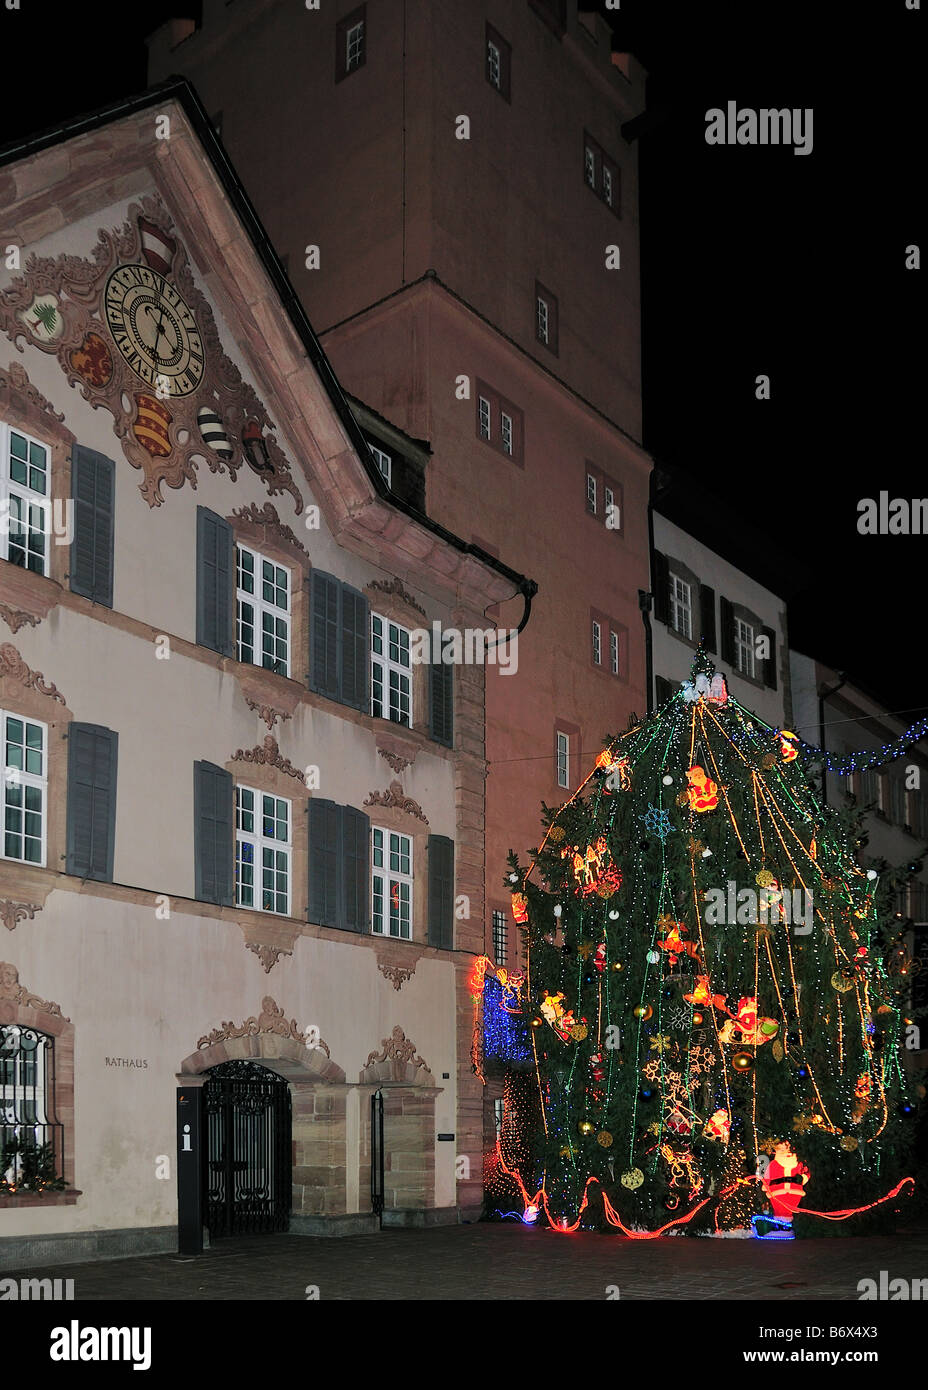 Der bunte Weihnachtsbaum vor dem Rathaus in Rheinfelden, Aargau, Schweiz  Stockfotografie - Alamy